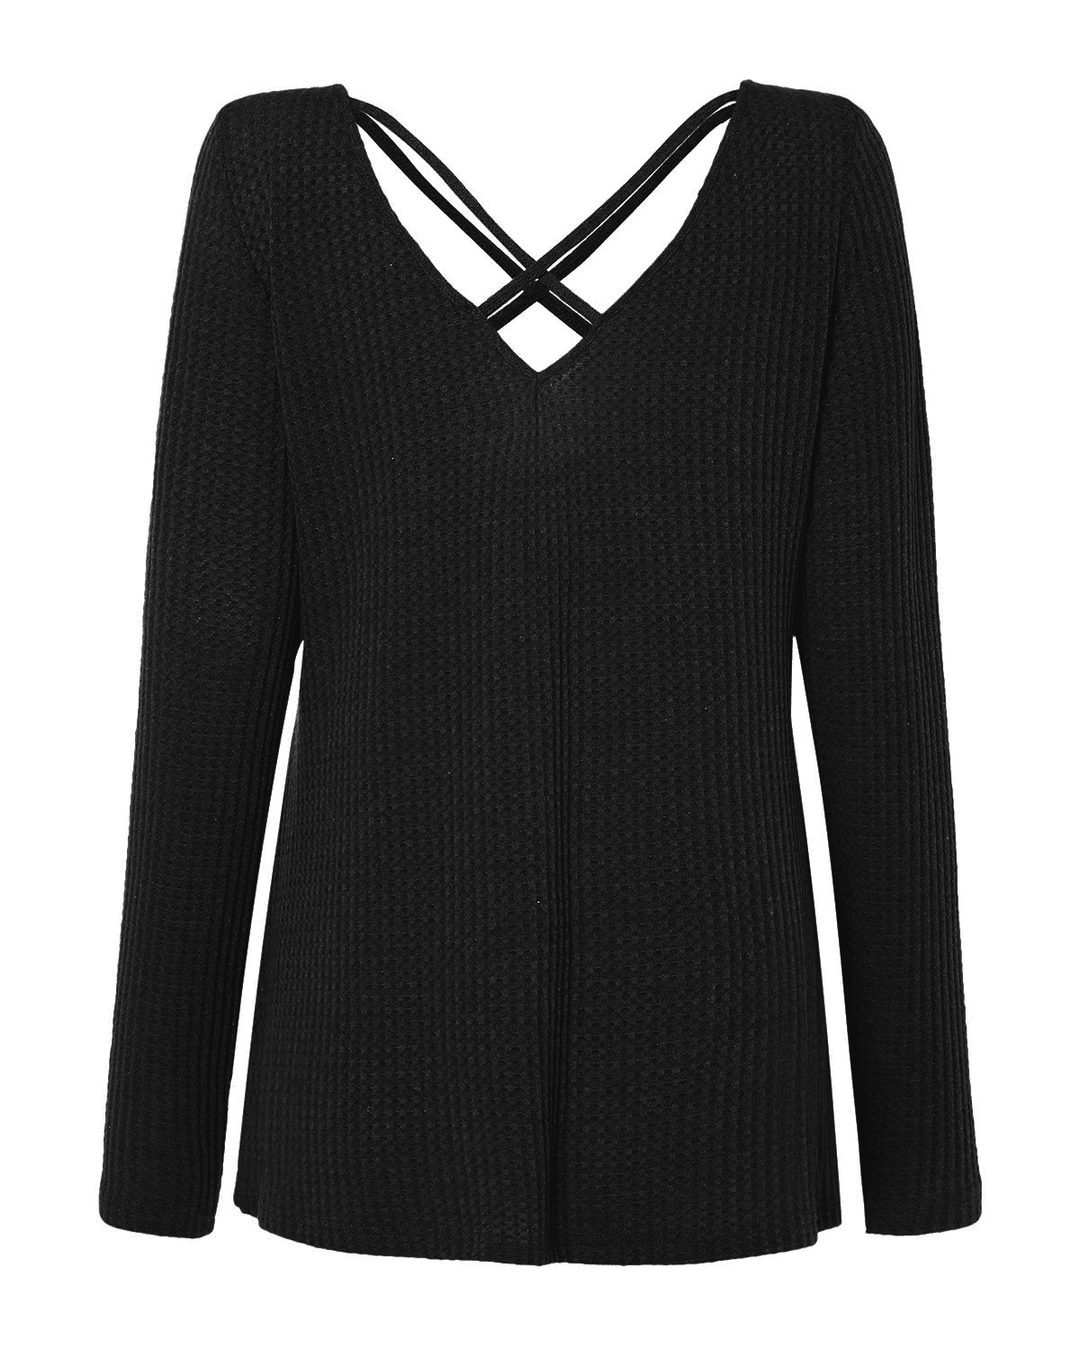 Women Pullover Tops Long Sleeve Cross V Neck Sweaters for Women - MRSLM